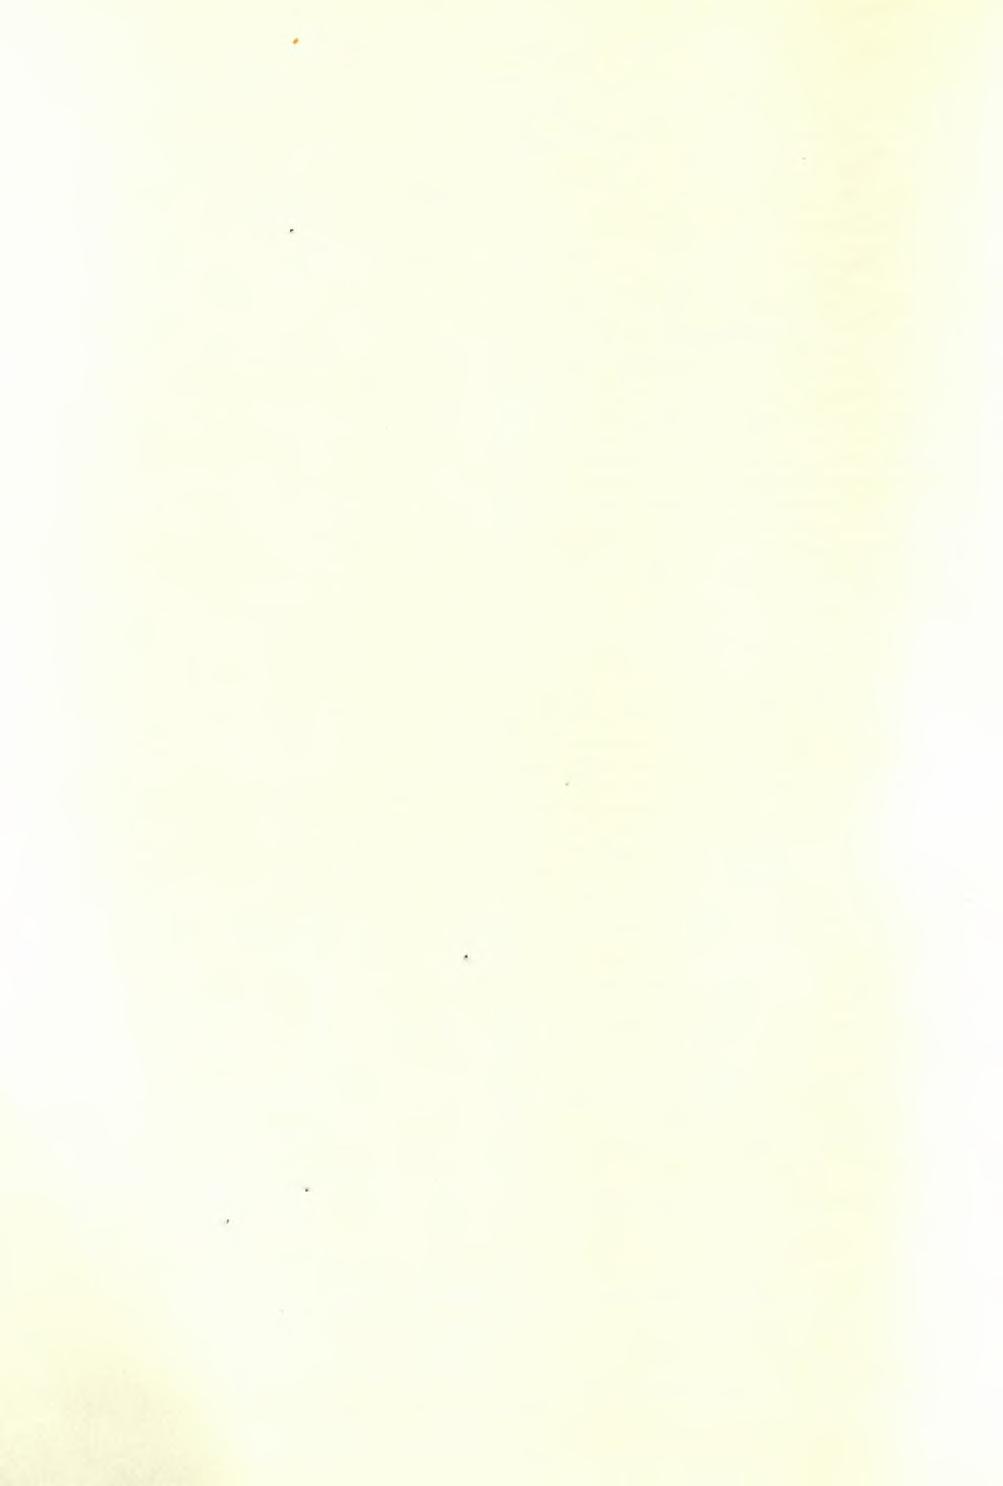 386 ΑΡΧΑΙΟΛΟΓΙΚΟΝ ΔΕΛΤΙΟΝ 19 (1964) : ΧΡΟΝΙΚΑ ΑΡΧΑΙΟΤΗΤΕΣ ΚΑΙ ΜΝΗΜΕΙΑ Σαμοθράκη ΘΡΑΚΗΣ Κατά τάς πρώτας ημέρας τοϋ Ιανουάριου μετέβην είς Σαμοθράκην, κατόπιν τηλεγραφήματος τό όποϊον μέ έπληροφόρει